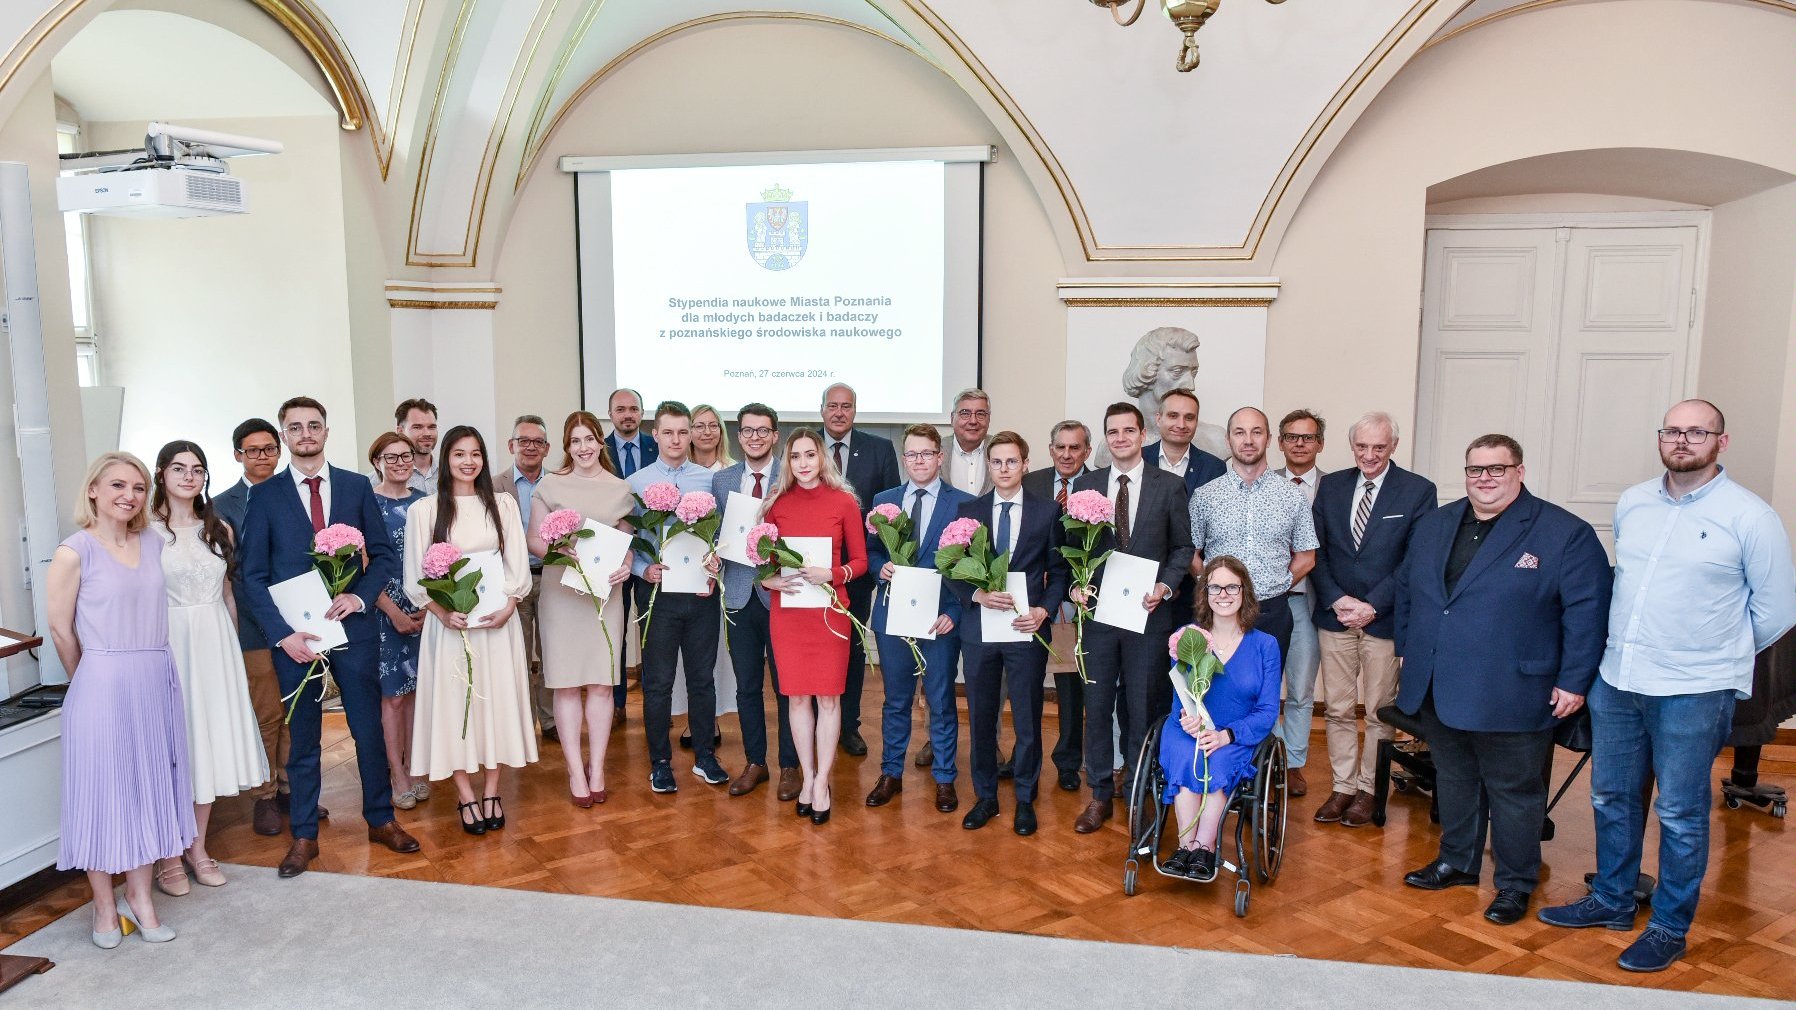 zdjęcie przedstawia grupę elegancko ubranych osób w sali urzędu miasta. W pierwszym rzędzie znajdują się laureatki i laureaci stypendium, którzy trzymają w rękach dyplomy i kwiaty.